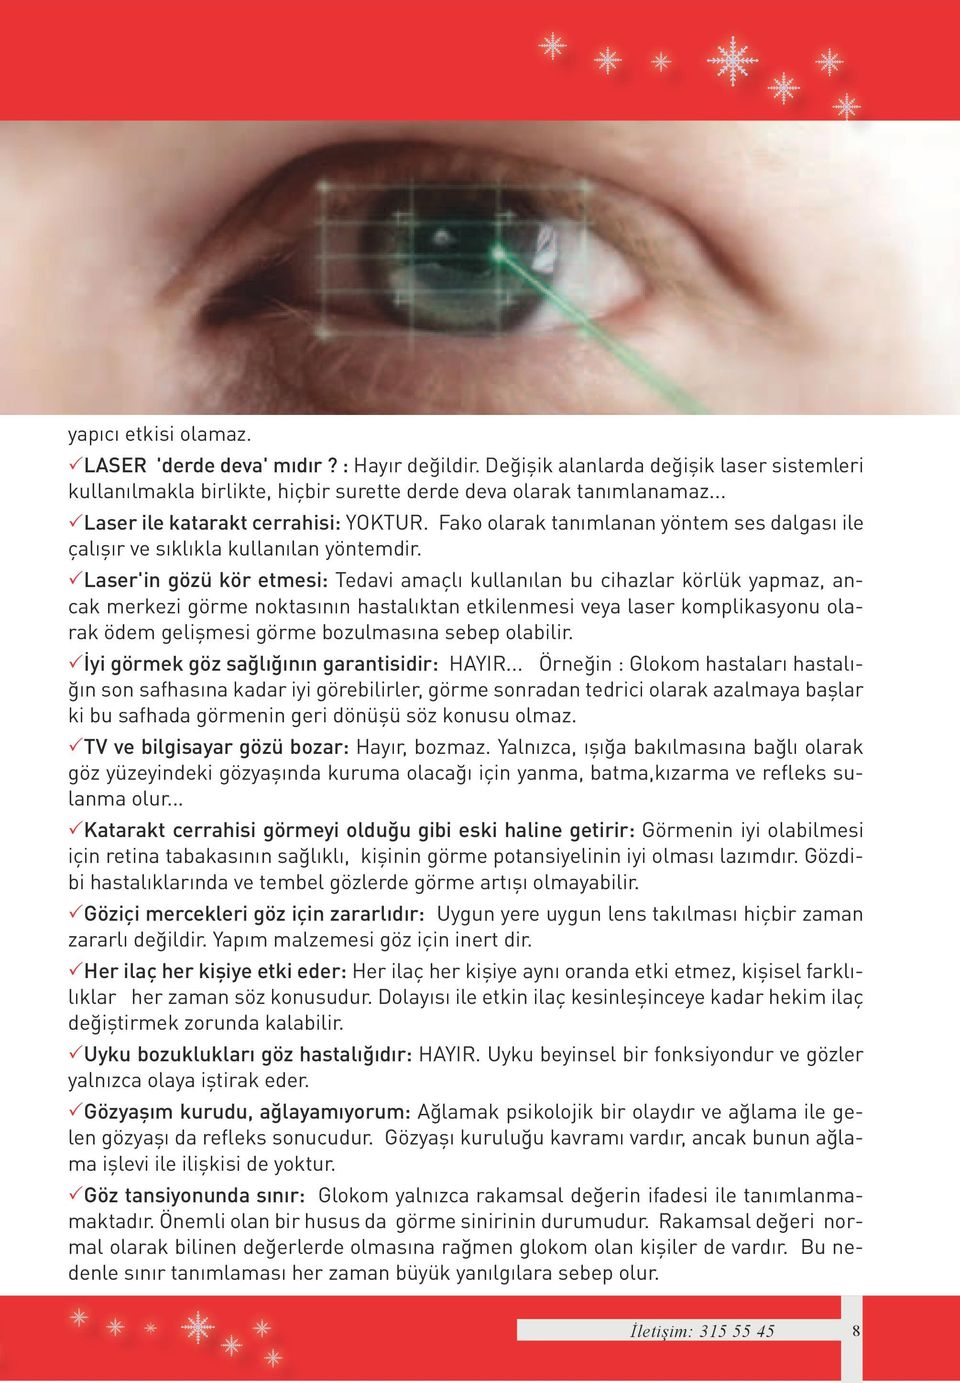 Laser'in gözü kör etmesi: Tedavi amaçlı kullanılan bu cihazlar körlük yapmaz, ancak merkezi görme noktasının hastalıktan etkilenmesi veya laser komplikasyonu olarak ödem gelişmesi görme bozulmasına